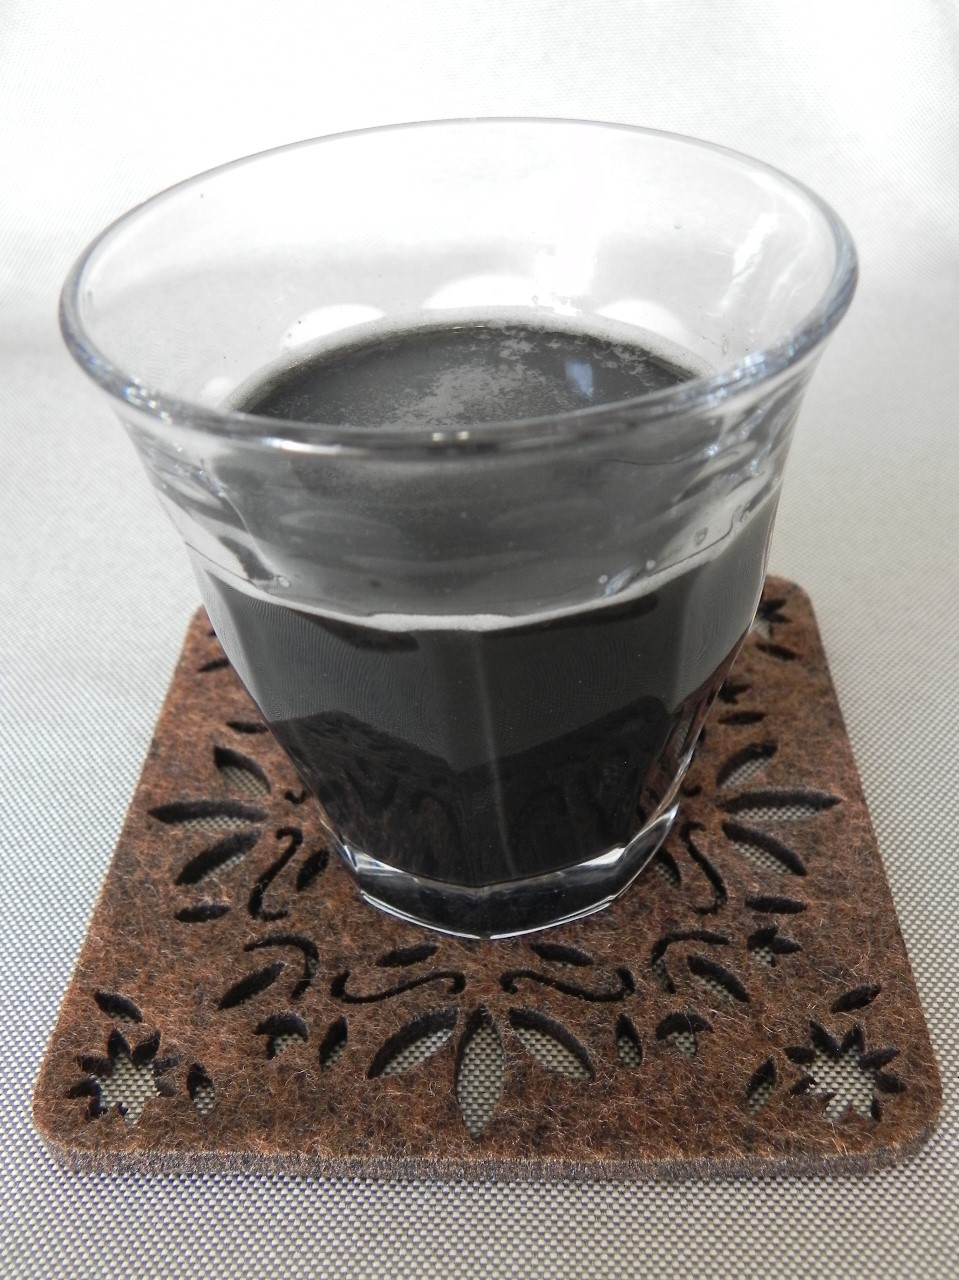 協和のコタラヒム【黒汁】の商品画像